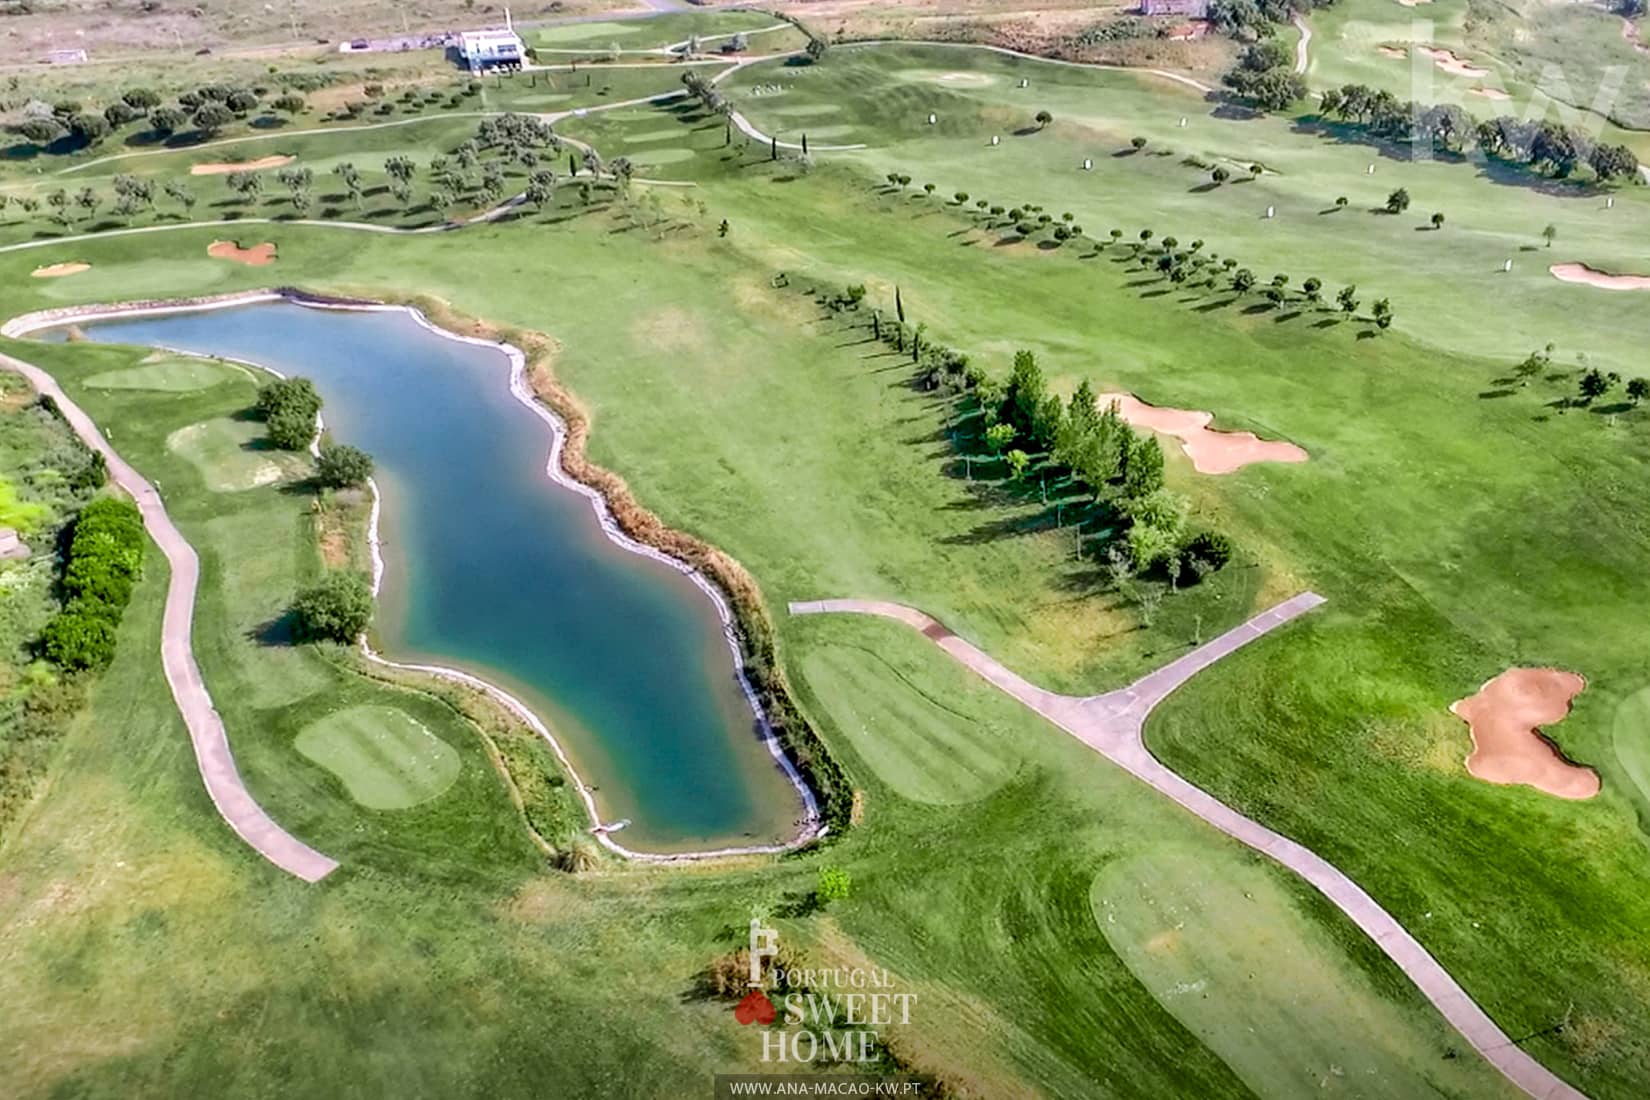 Vue aérienne du terrain de golf